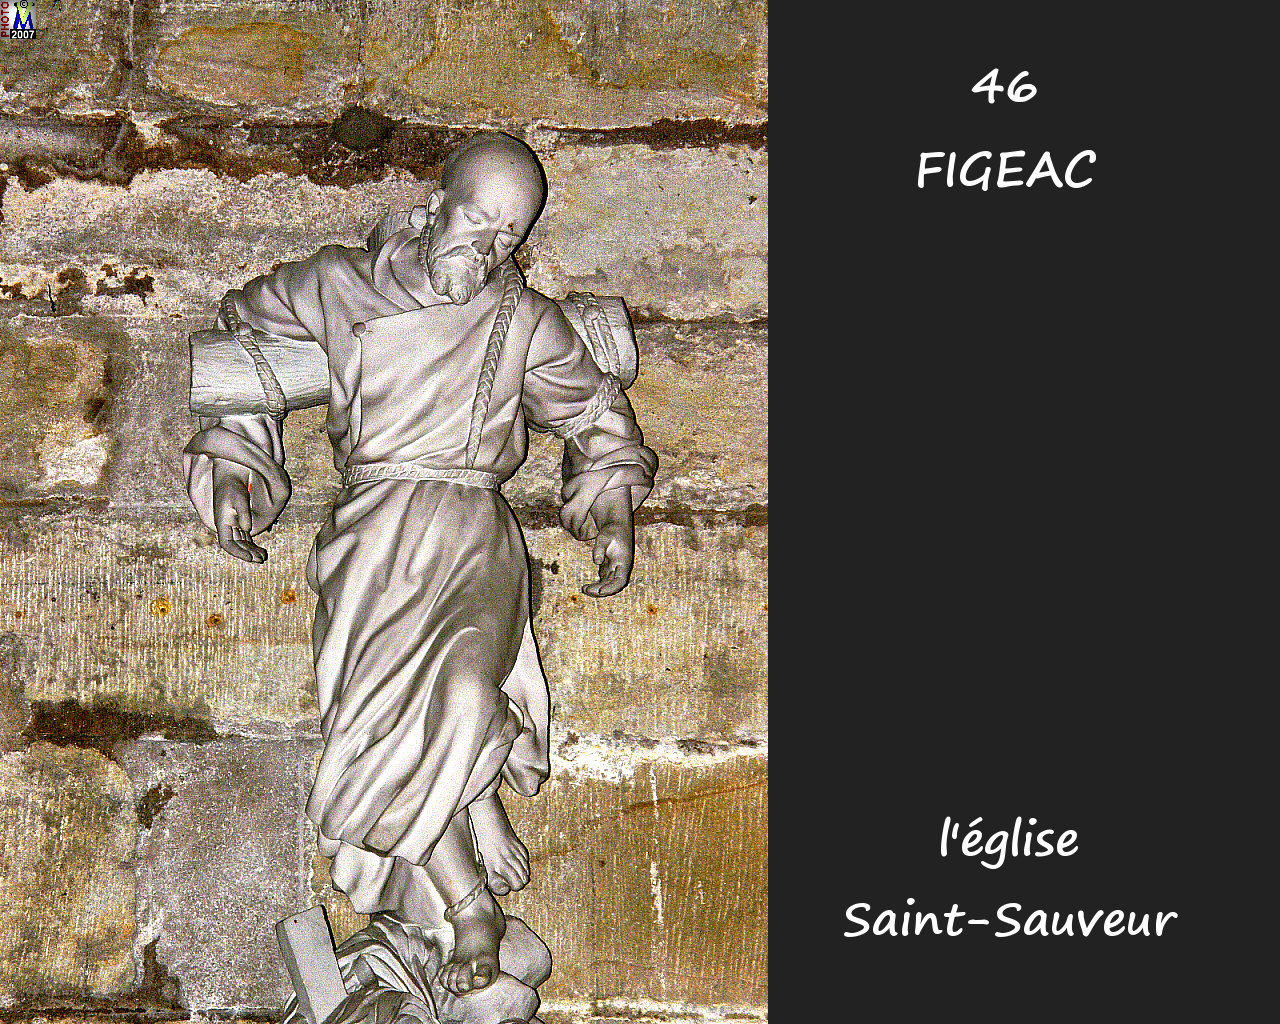 46FIGEAC_eglise-sauveur_272.jpg